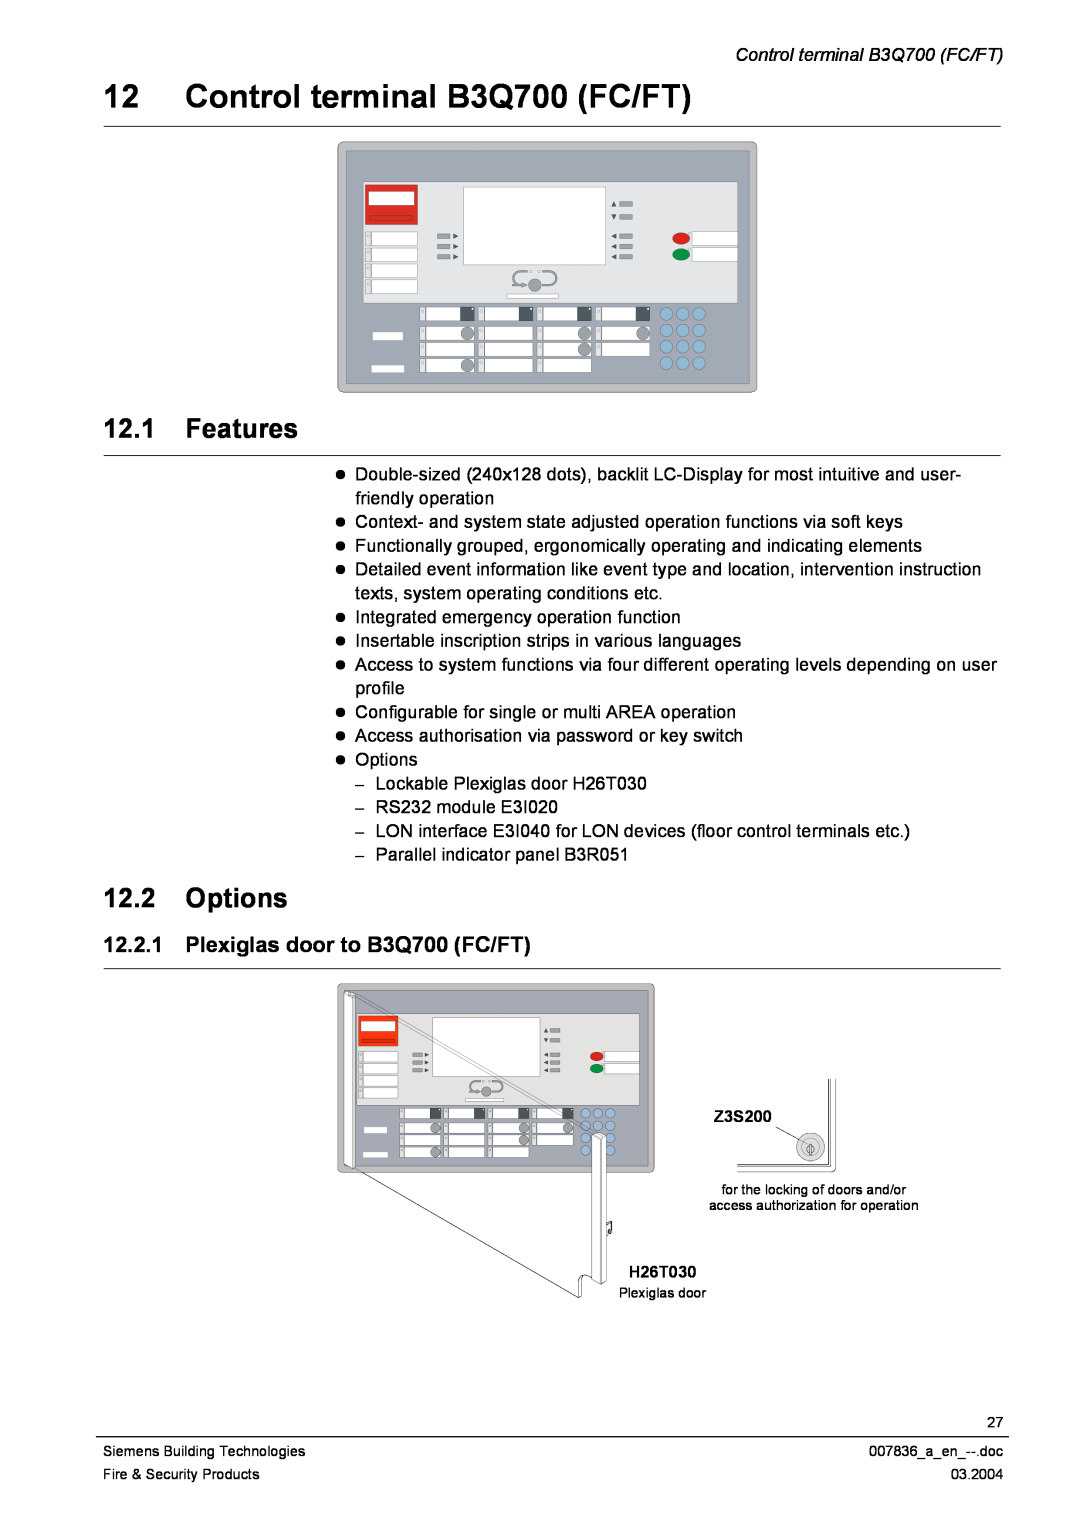 Siemens FC700A manual Control terminal B3Q700 FC/FT, 12.1Features, 12.2Options, 12.2.1Plexiglas door to B3Q700 FC/FT 